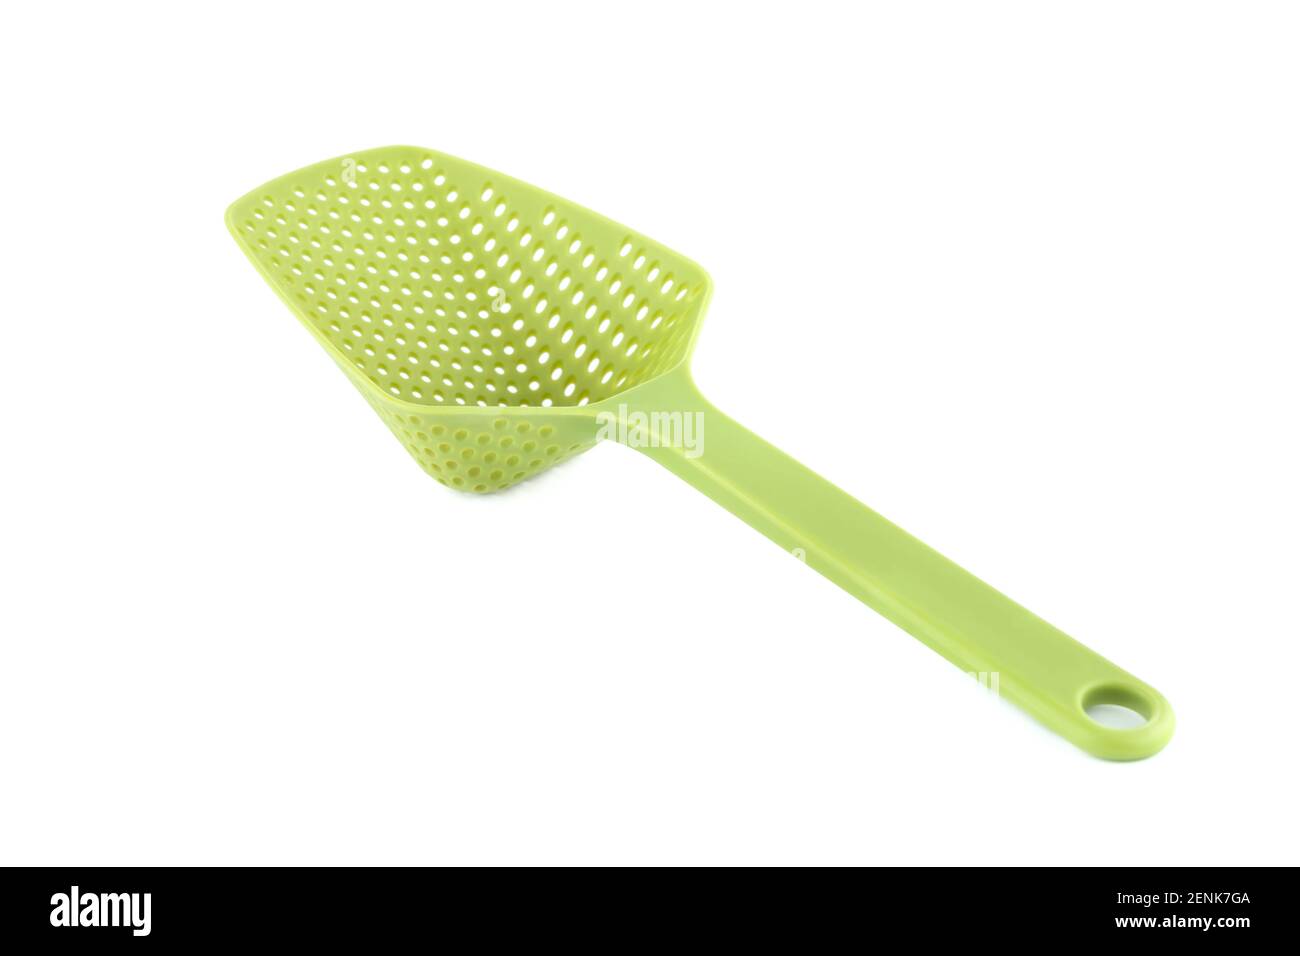 Skimmer utensilio de cocina de plástico verde aislado sobre fondo blanco. Foto de stock